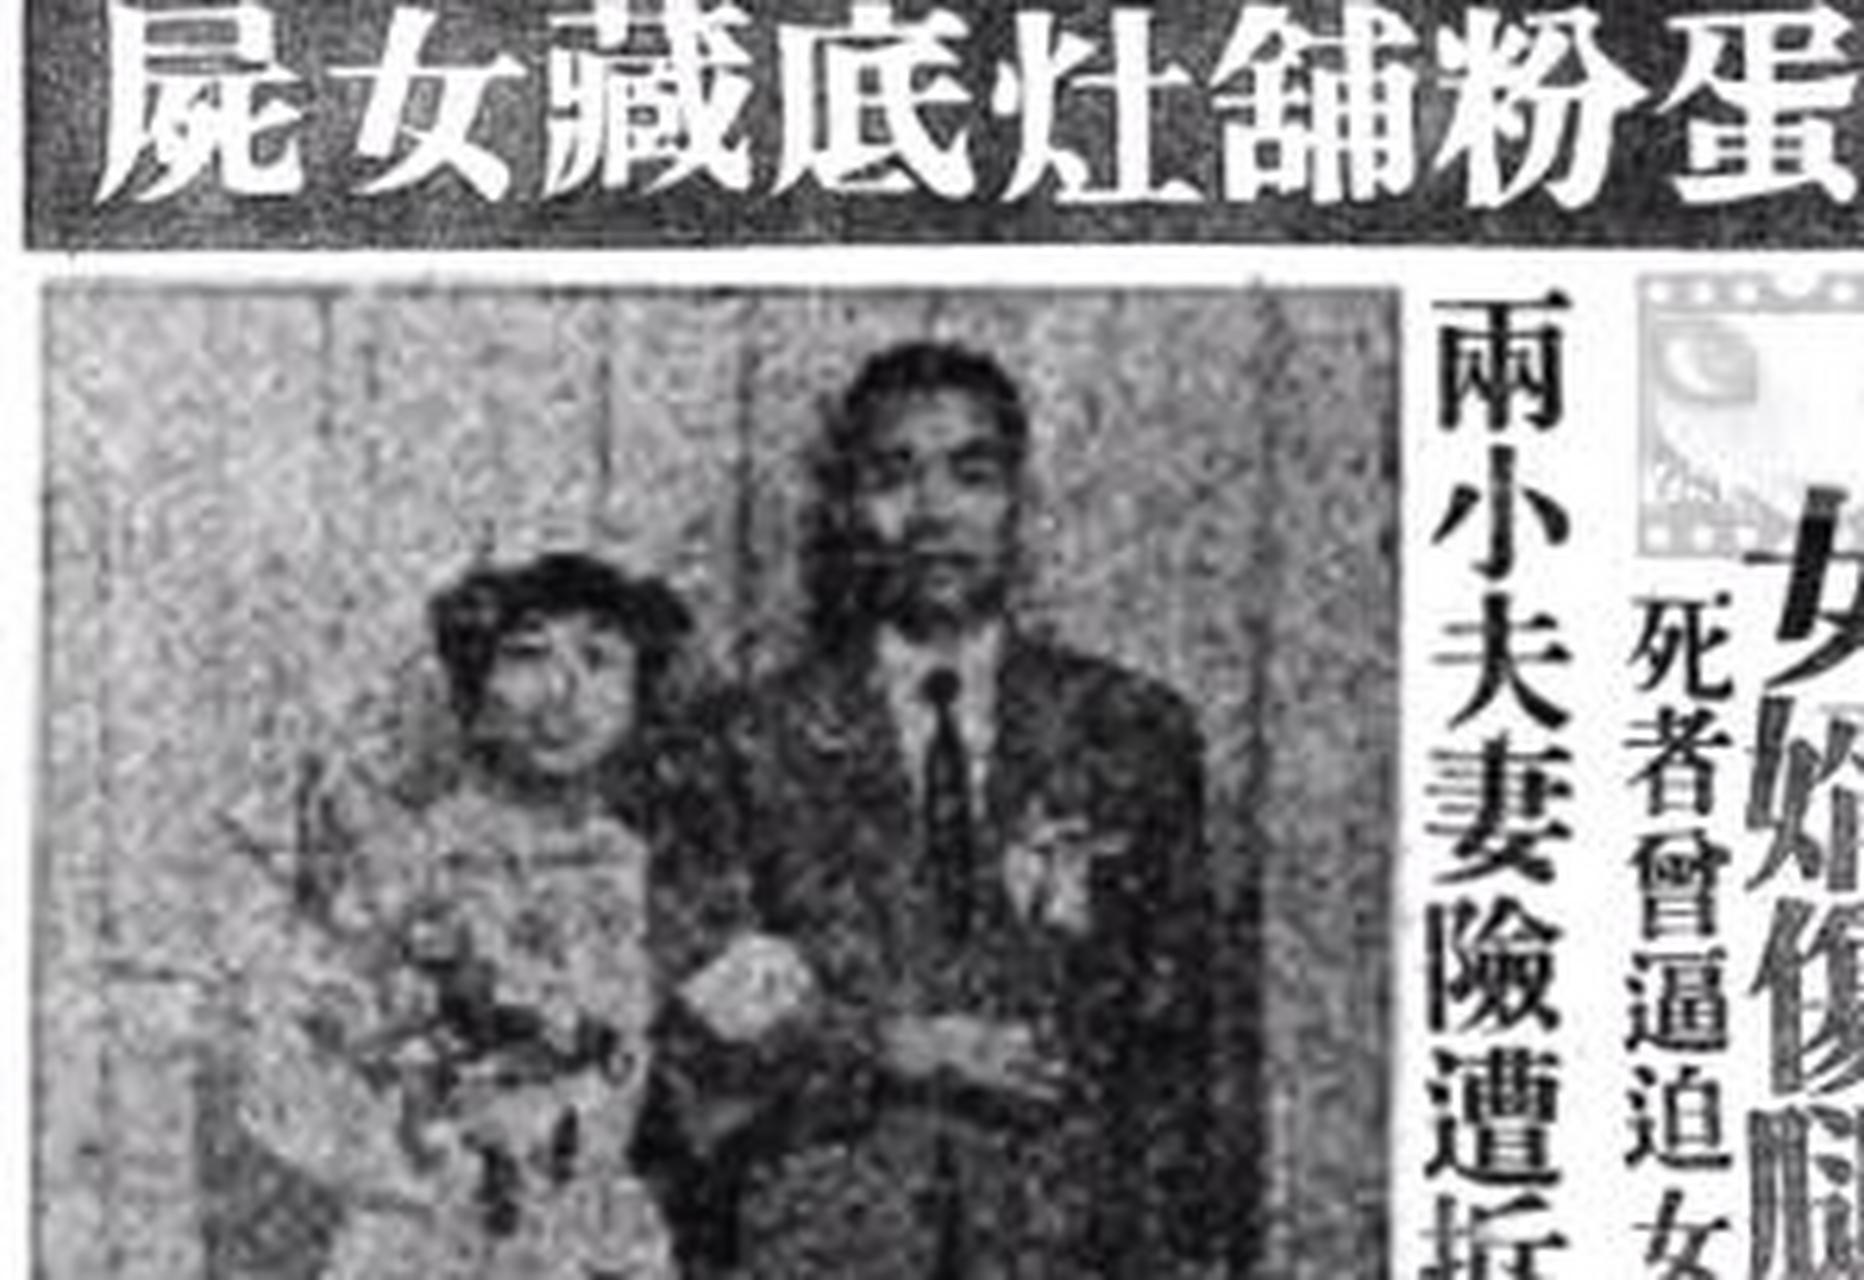 【香港灶底藏尸案】 1975年8月22日,住在香港牛头角下村第九座的一楼